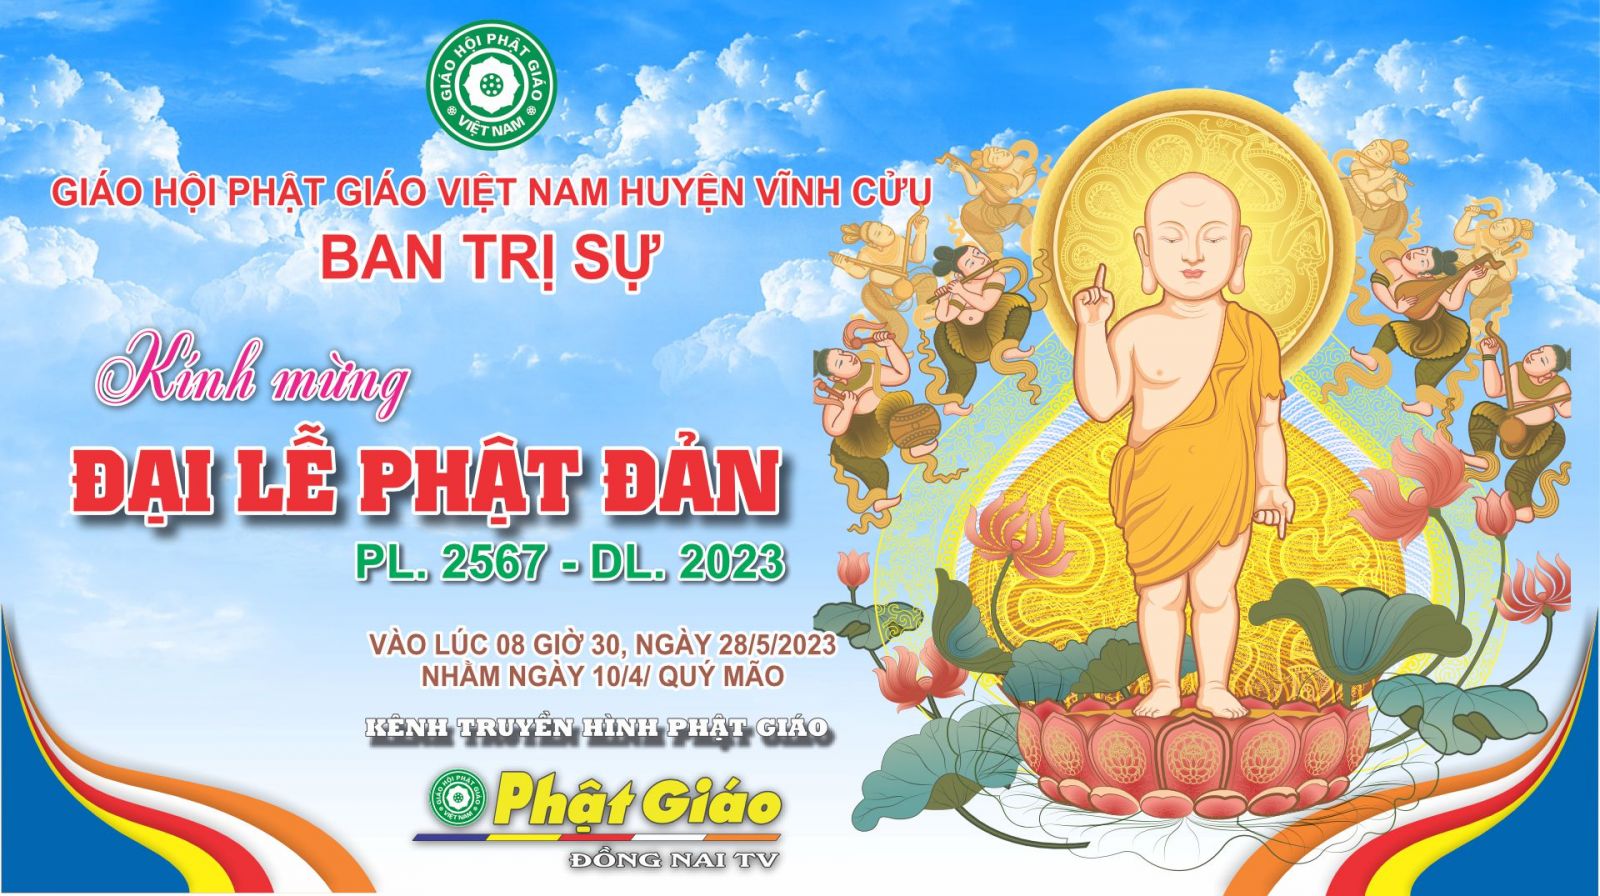 Đồng Nai: Ban Trị sự GHPGVN huyện Vĩnh Cửu trang nghiêm tổ chức Đại lễ Phật đản PL. 2567 - DL. 2023